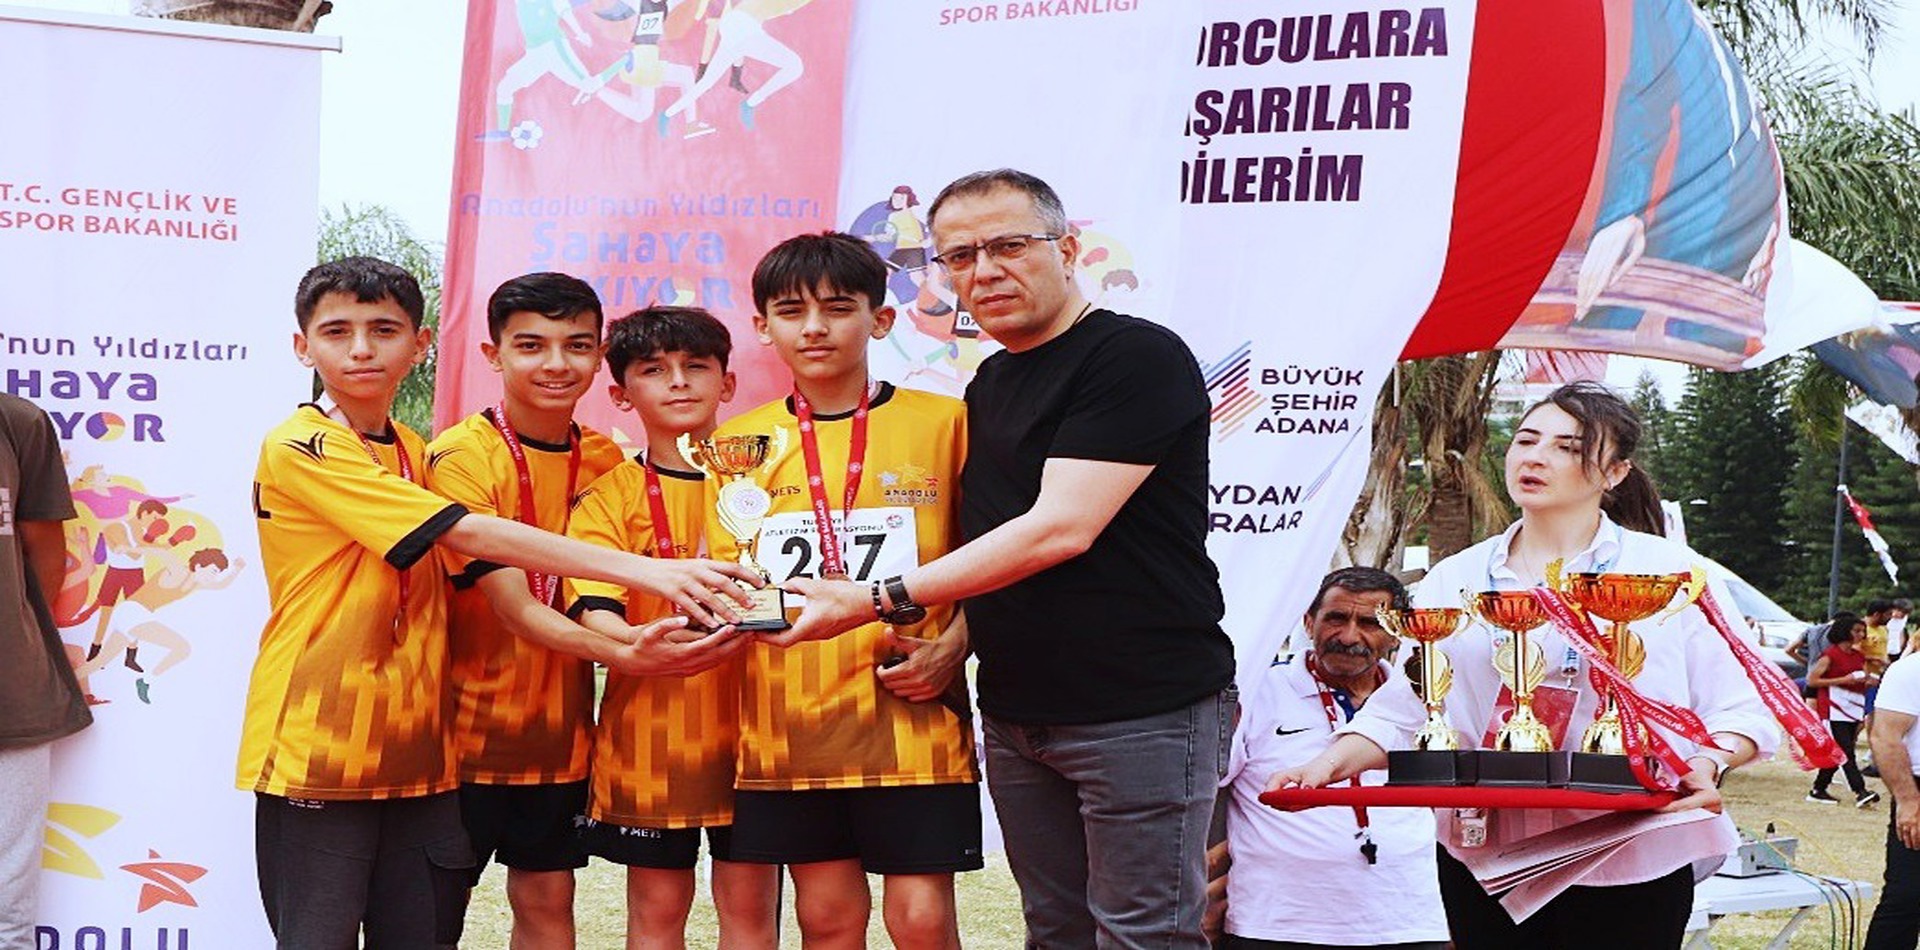 Atletizm Geliştirme Projesi final yarışmaları Adana’da yapıldı